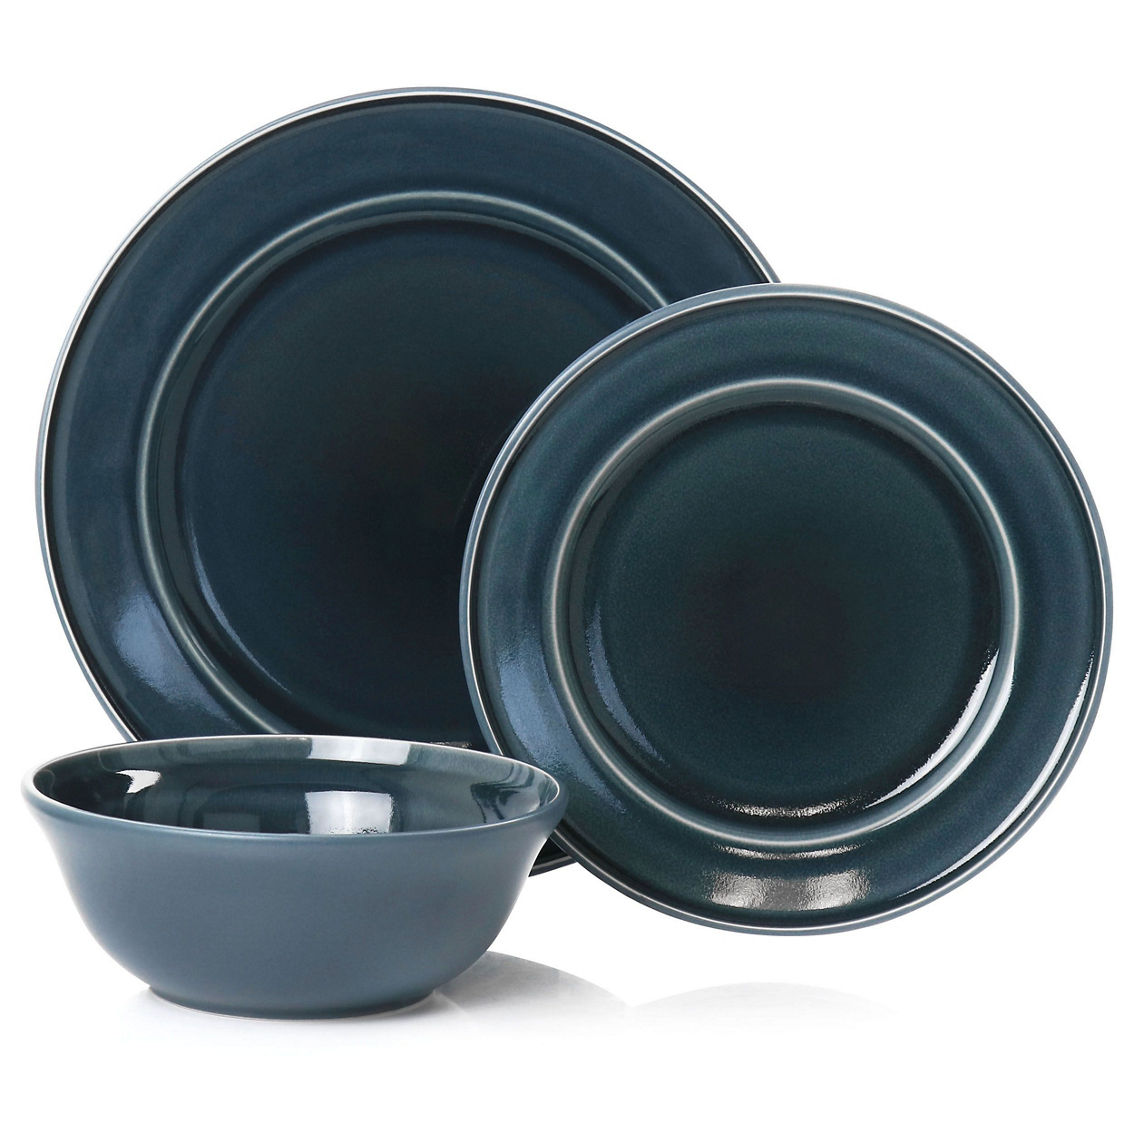 Martha Stewart 12 Piece Speckle Glaze Stoneware Dinnerware Set in Blue - Image 2 of 5